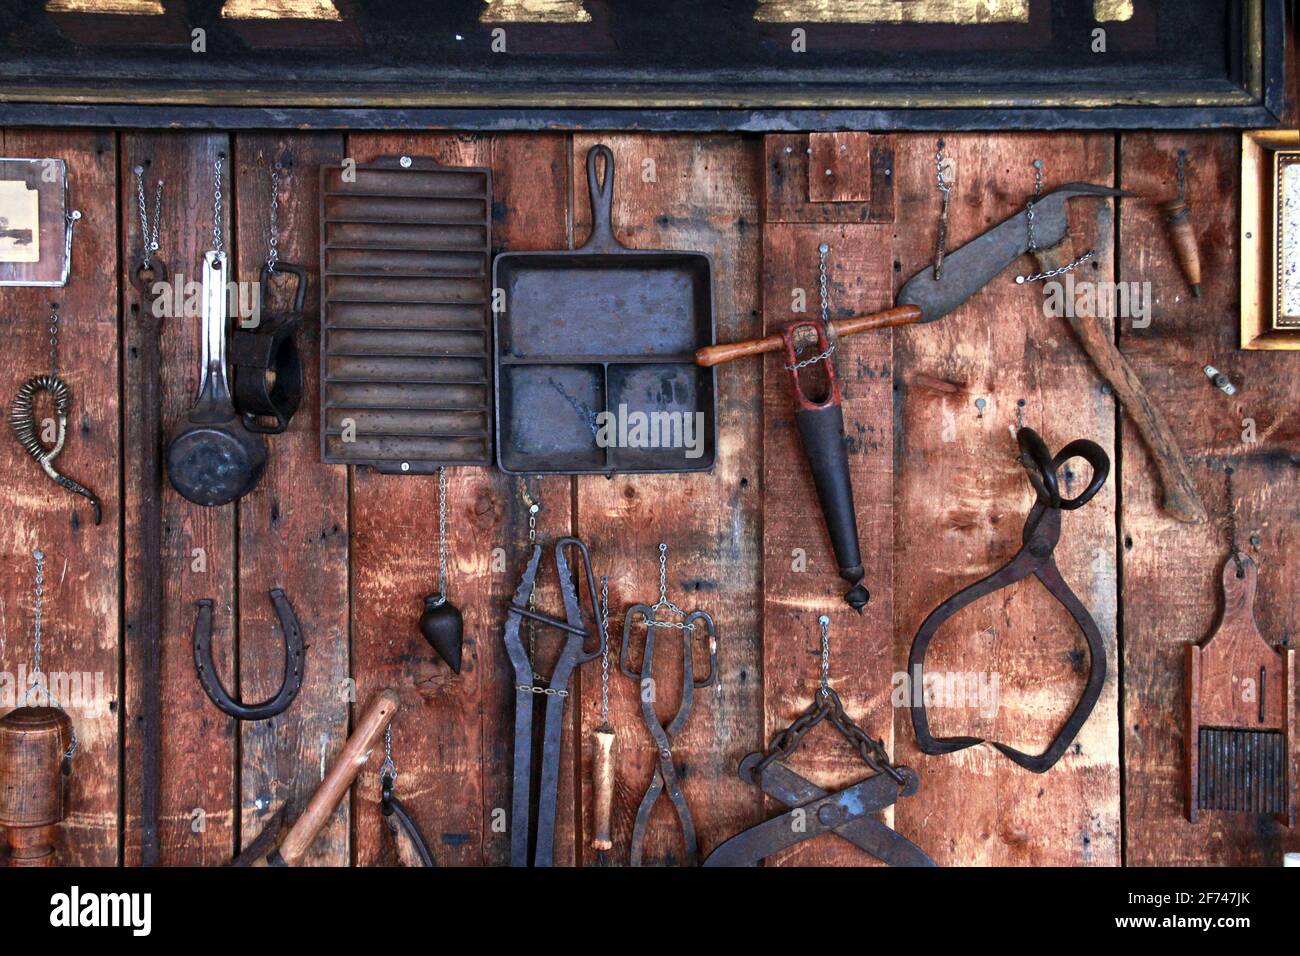 Rustikale Land alte antike Metall-Werkzeuge, Klemme, Rauhhhalsklaue, tong, Metallbecher, Hufeisen, hängende handgemachte Gegenstände, die an einer alten Scheunenwand aus Holz hängen Stockfoto